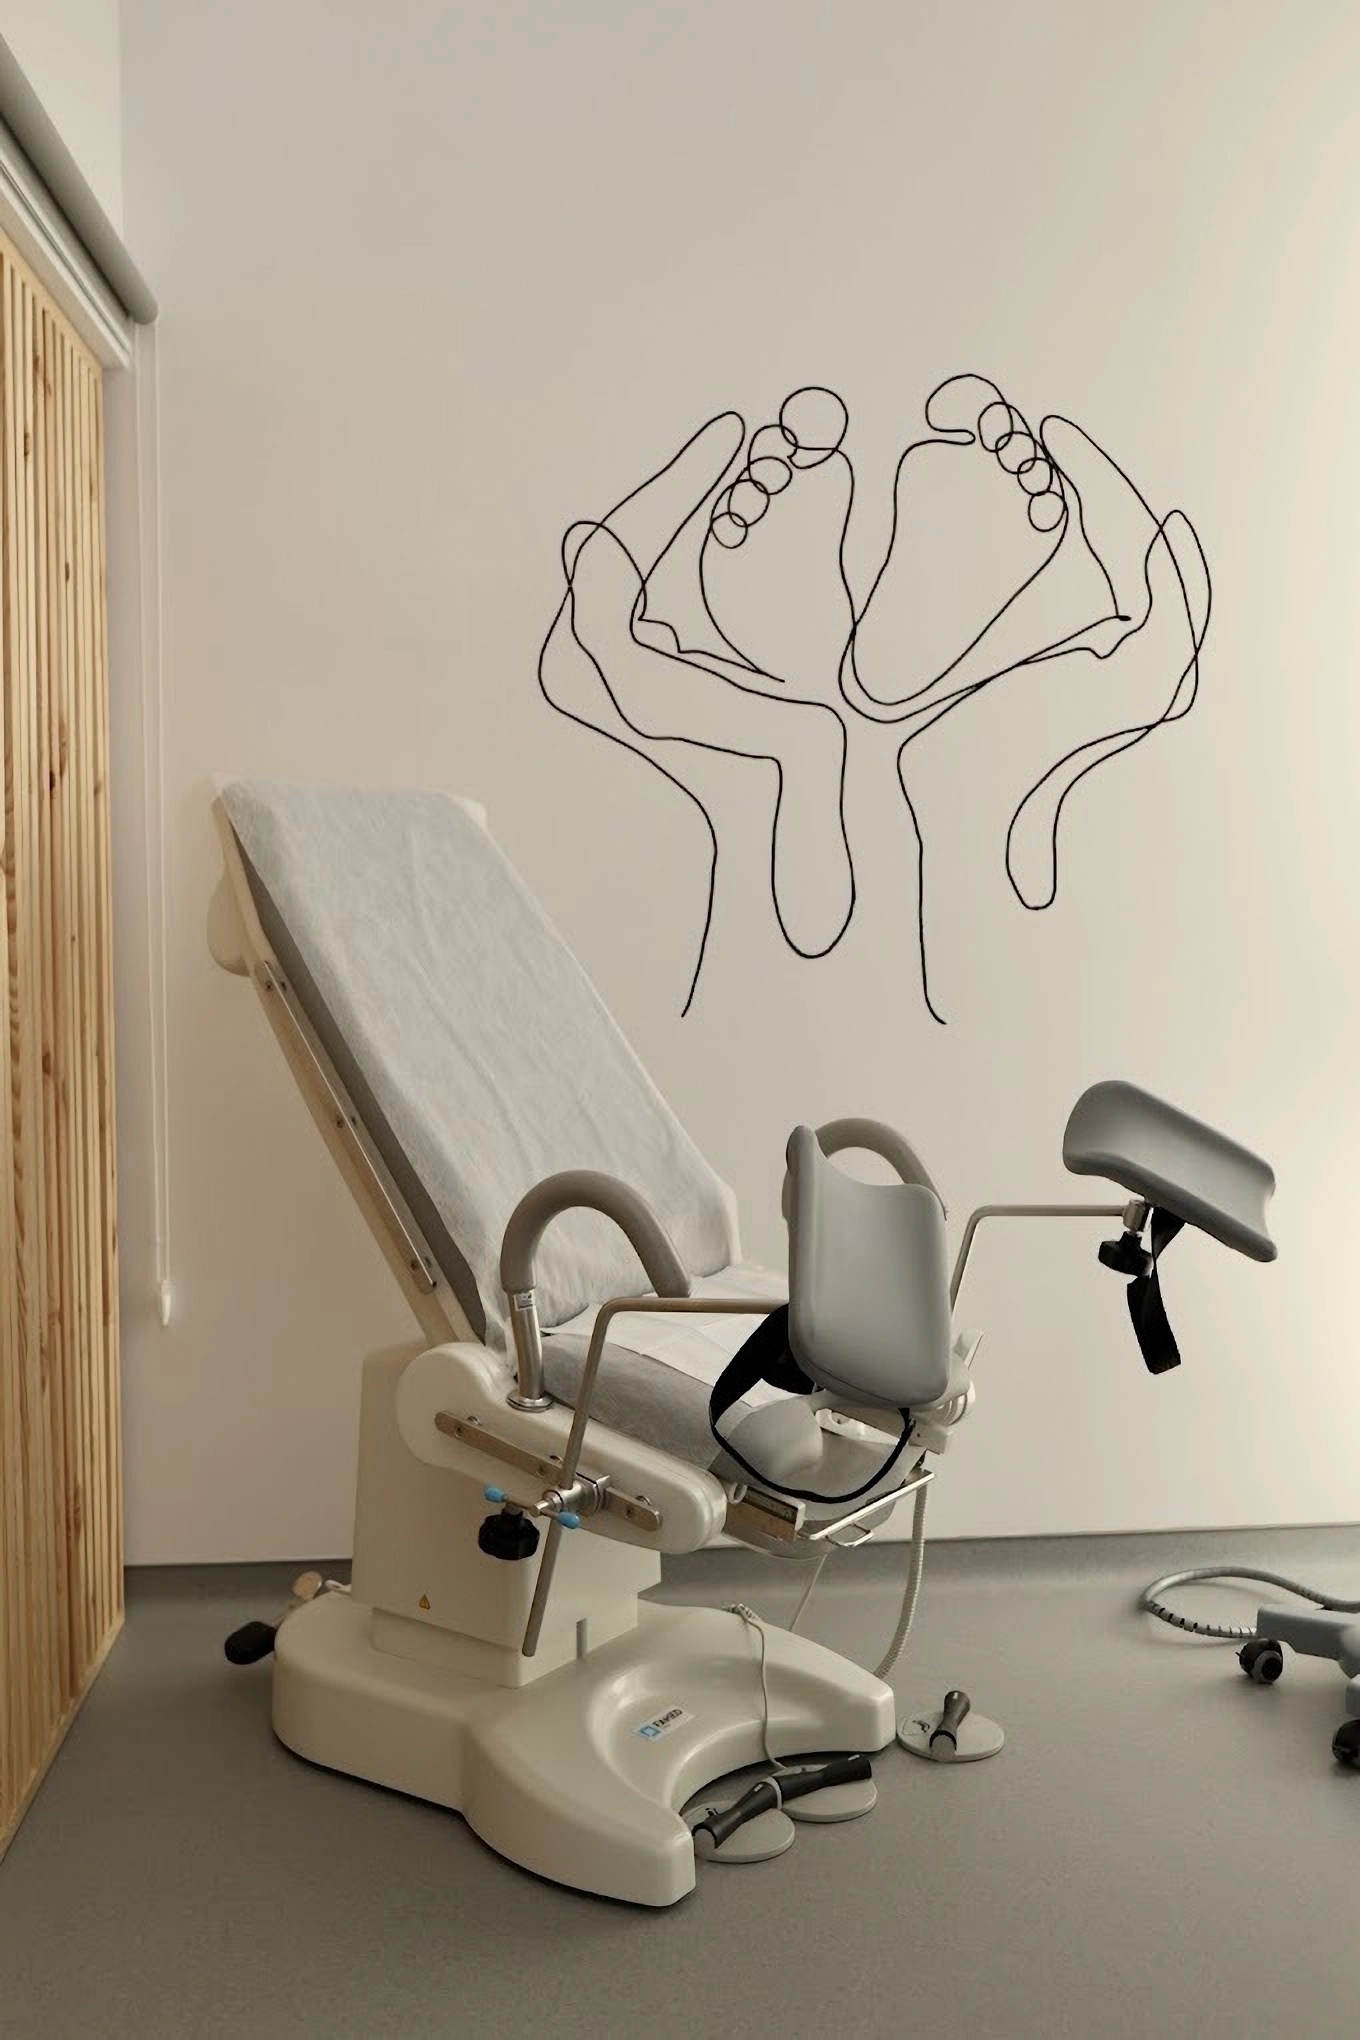 Gynecologist's chair in ARTKLINIK in Lviv Ukraine